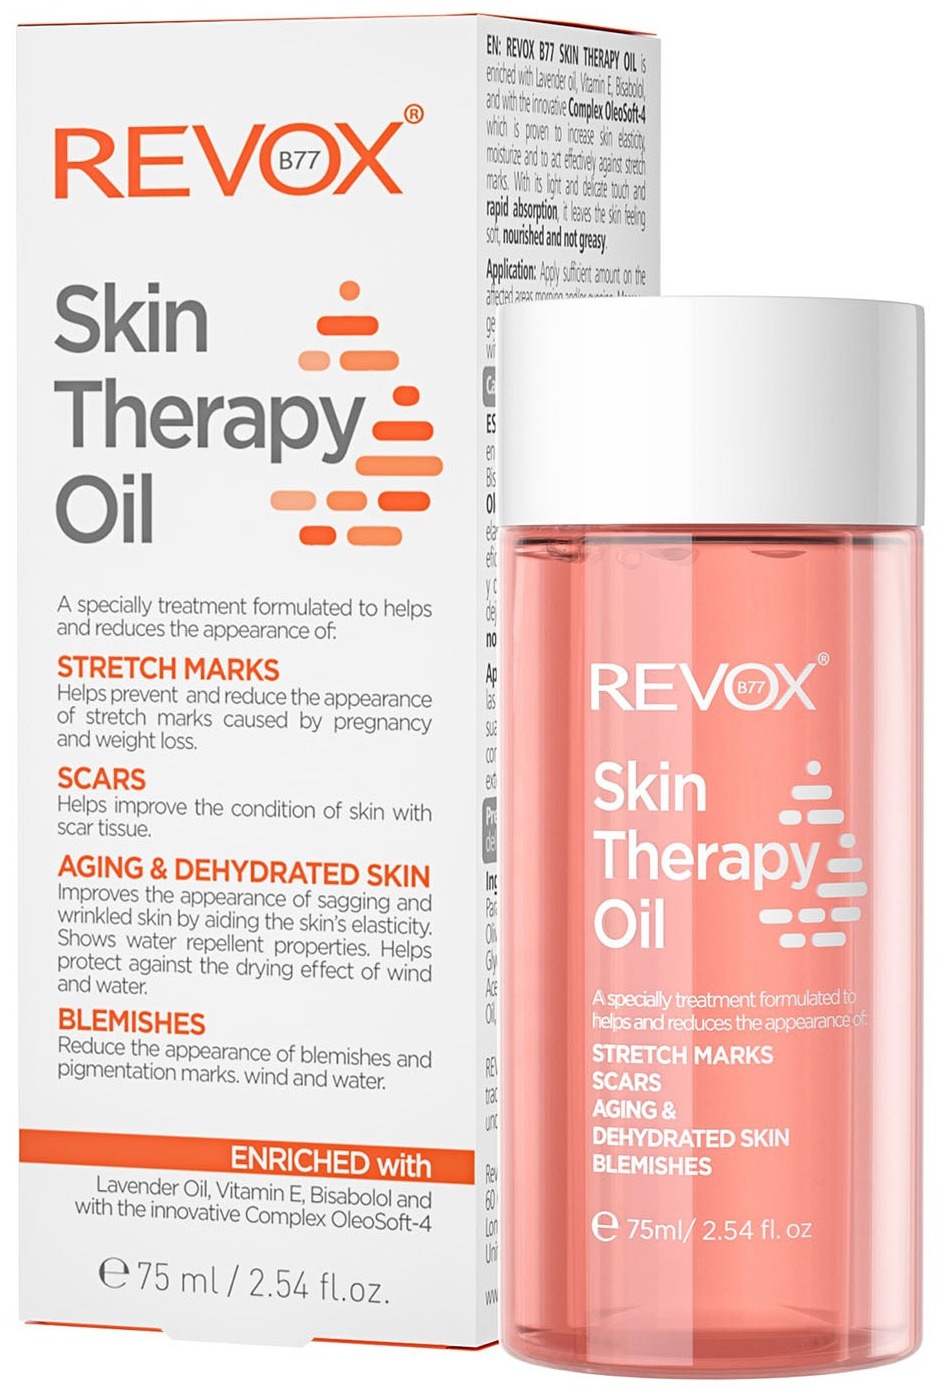 Revox Skin Therapy Oil